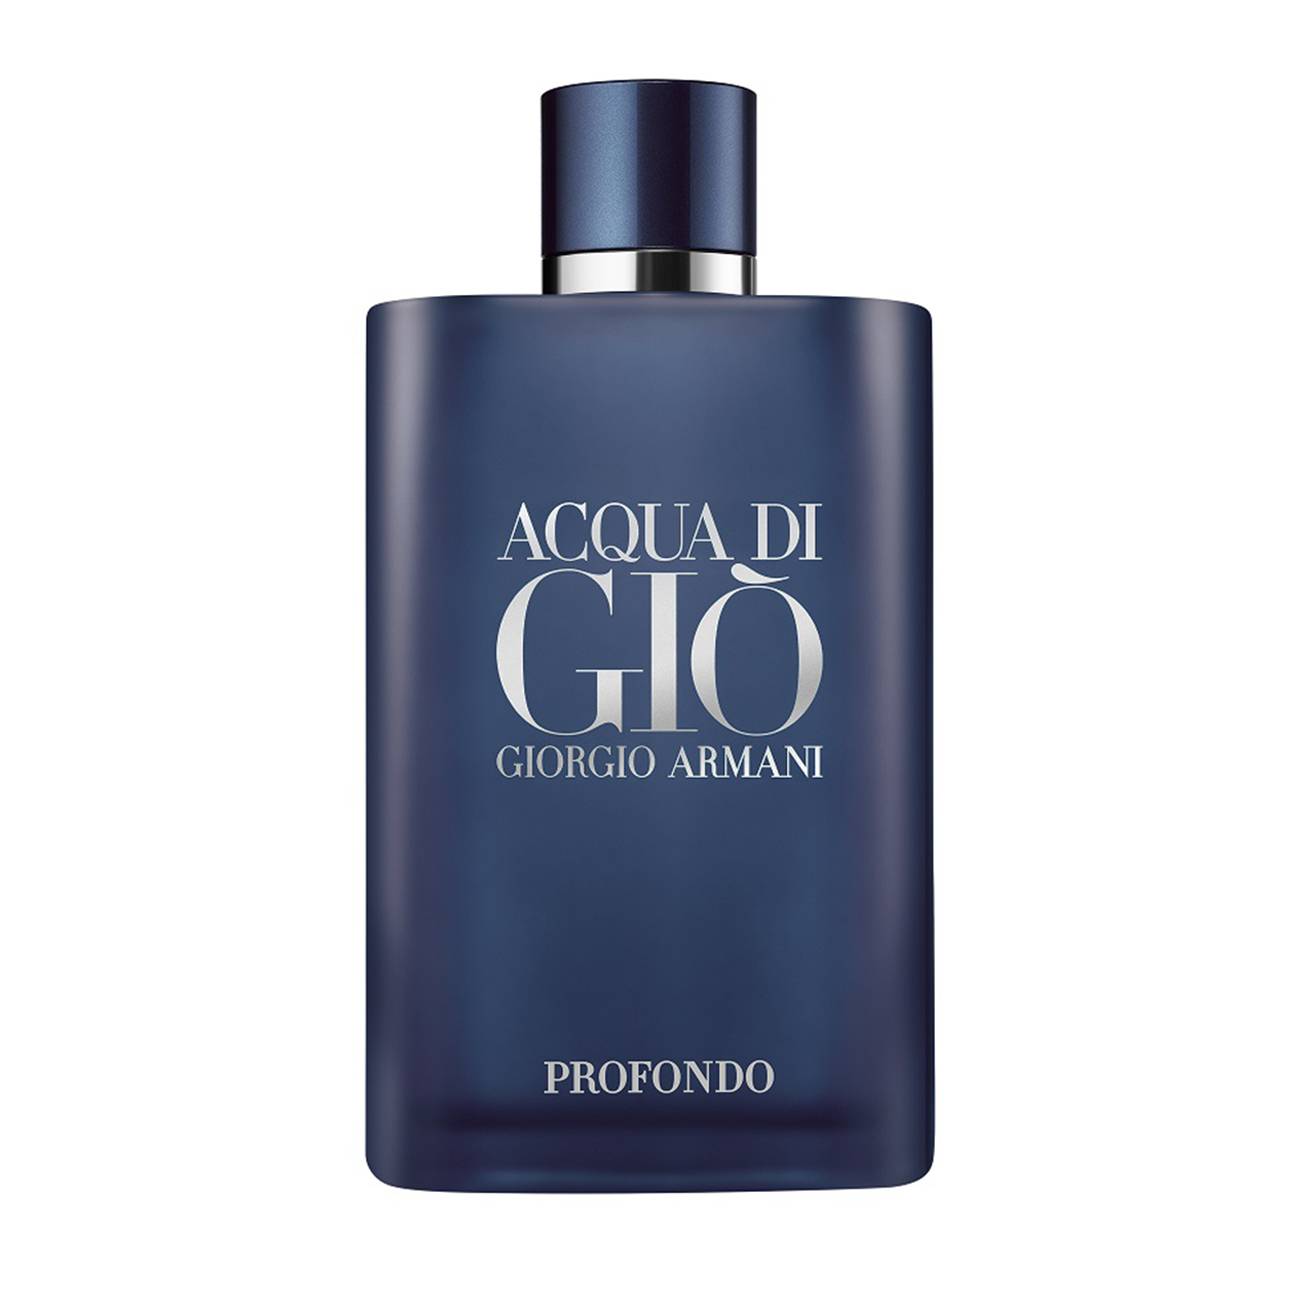 Acqua Di Gio Profondo 200 ml Giorgio Armani bestvalue.eu imagine noua